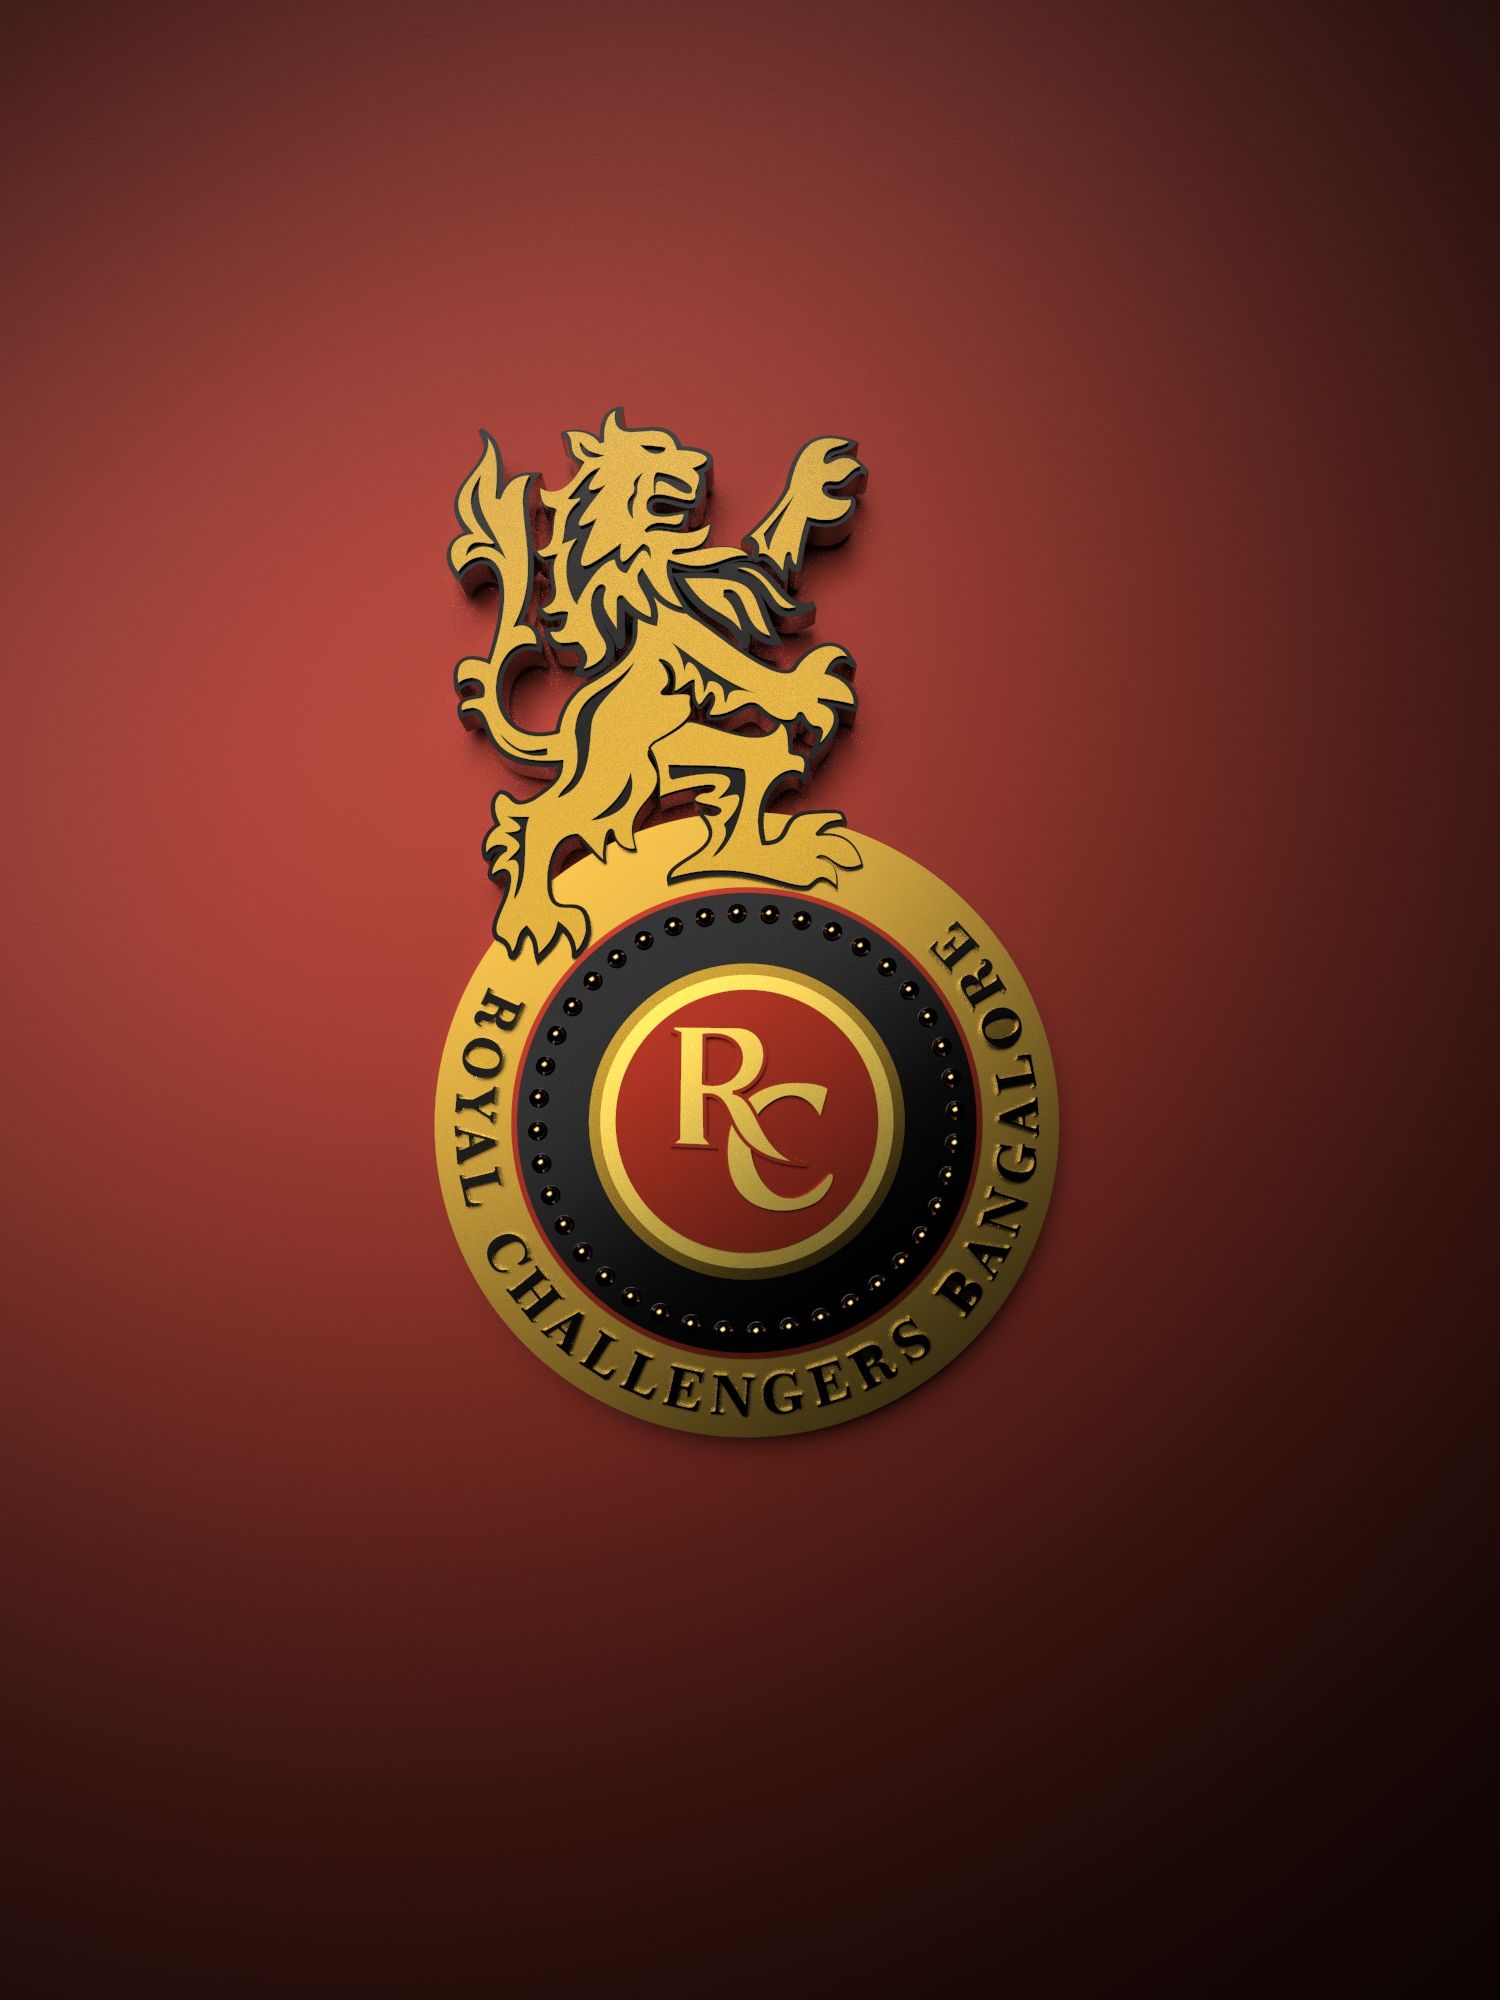 Royal Challengers Bangalore IPL metallic logo poster painting. Royal challengers bangalore, Metallic logo, Logos